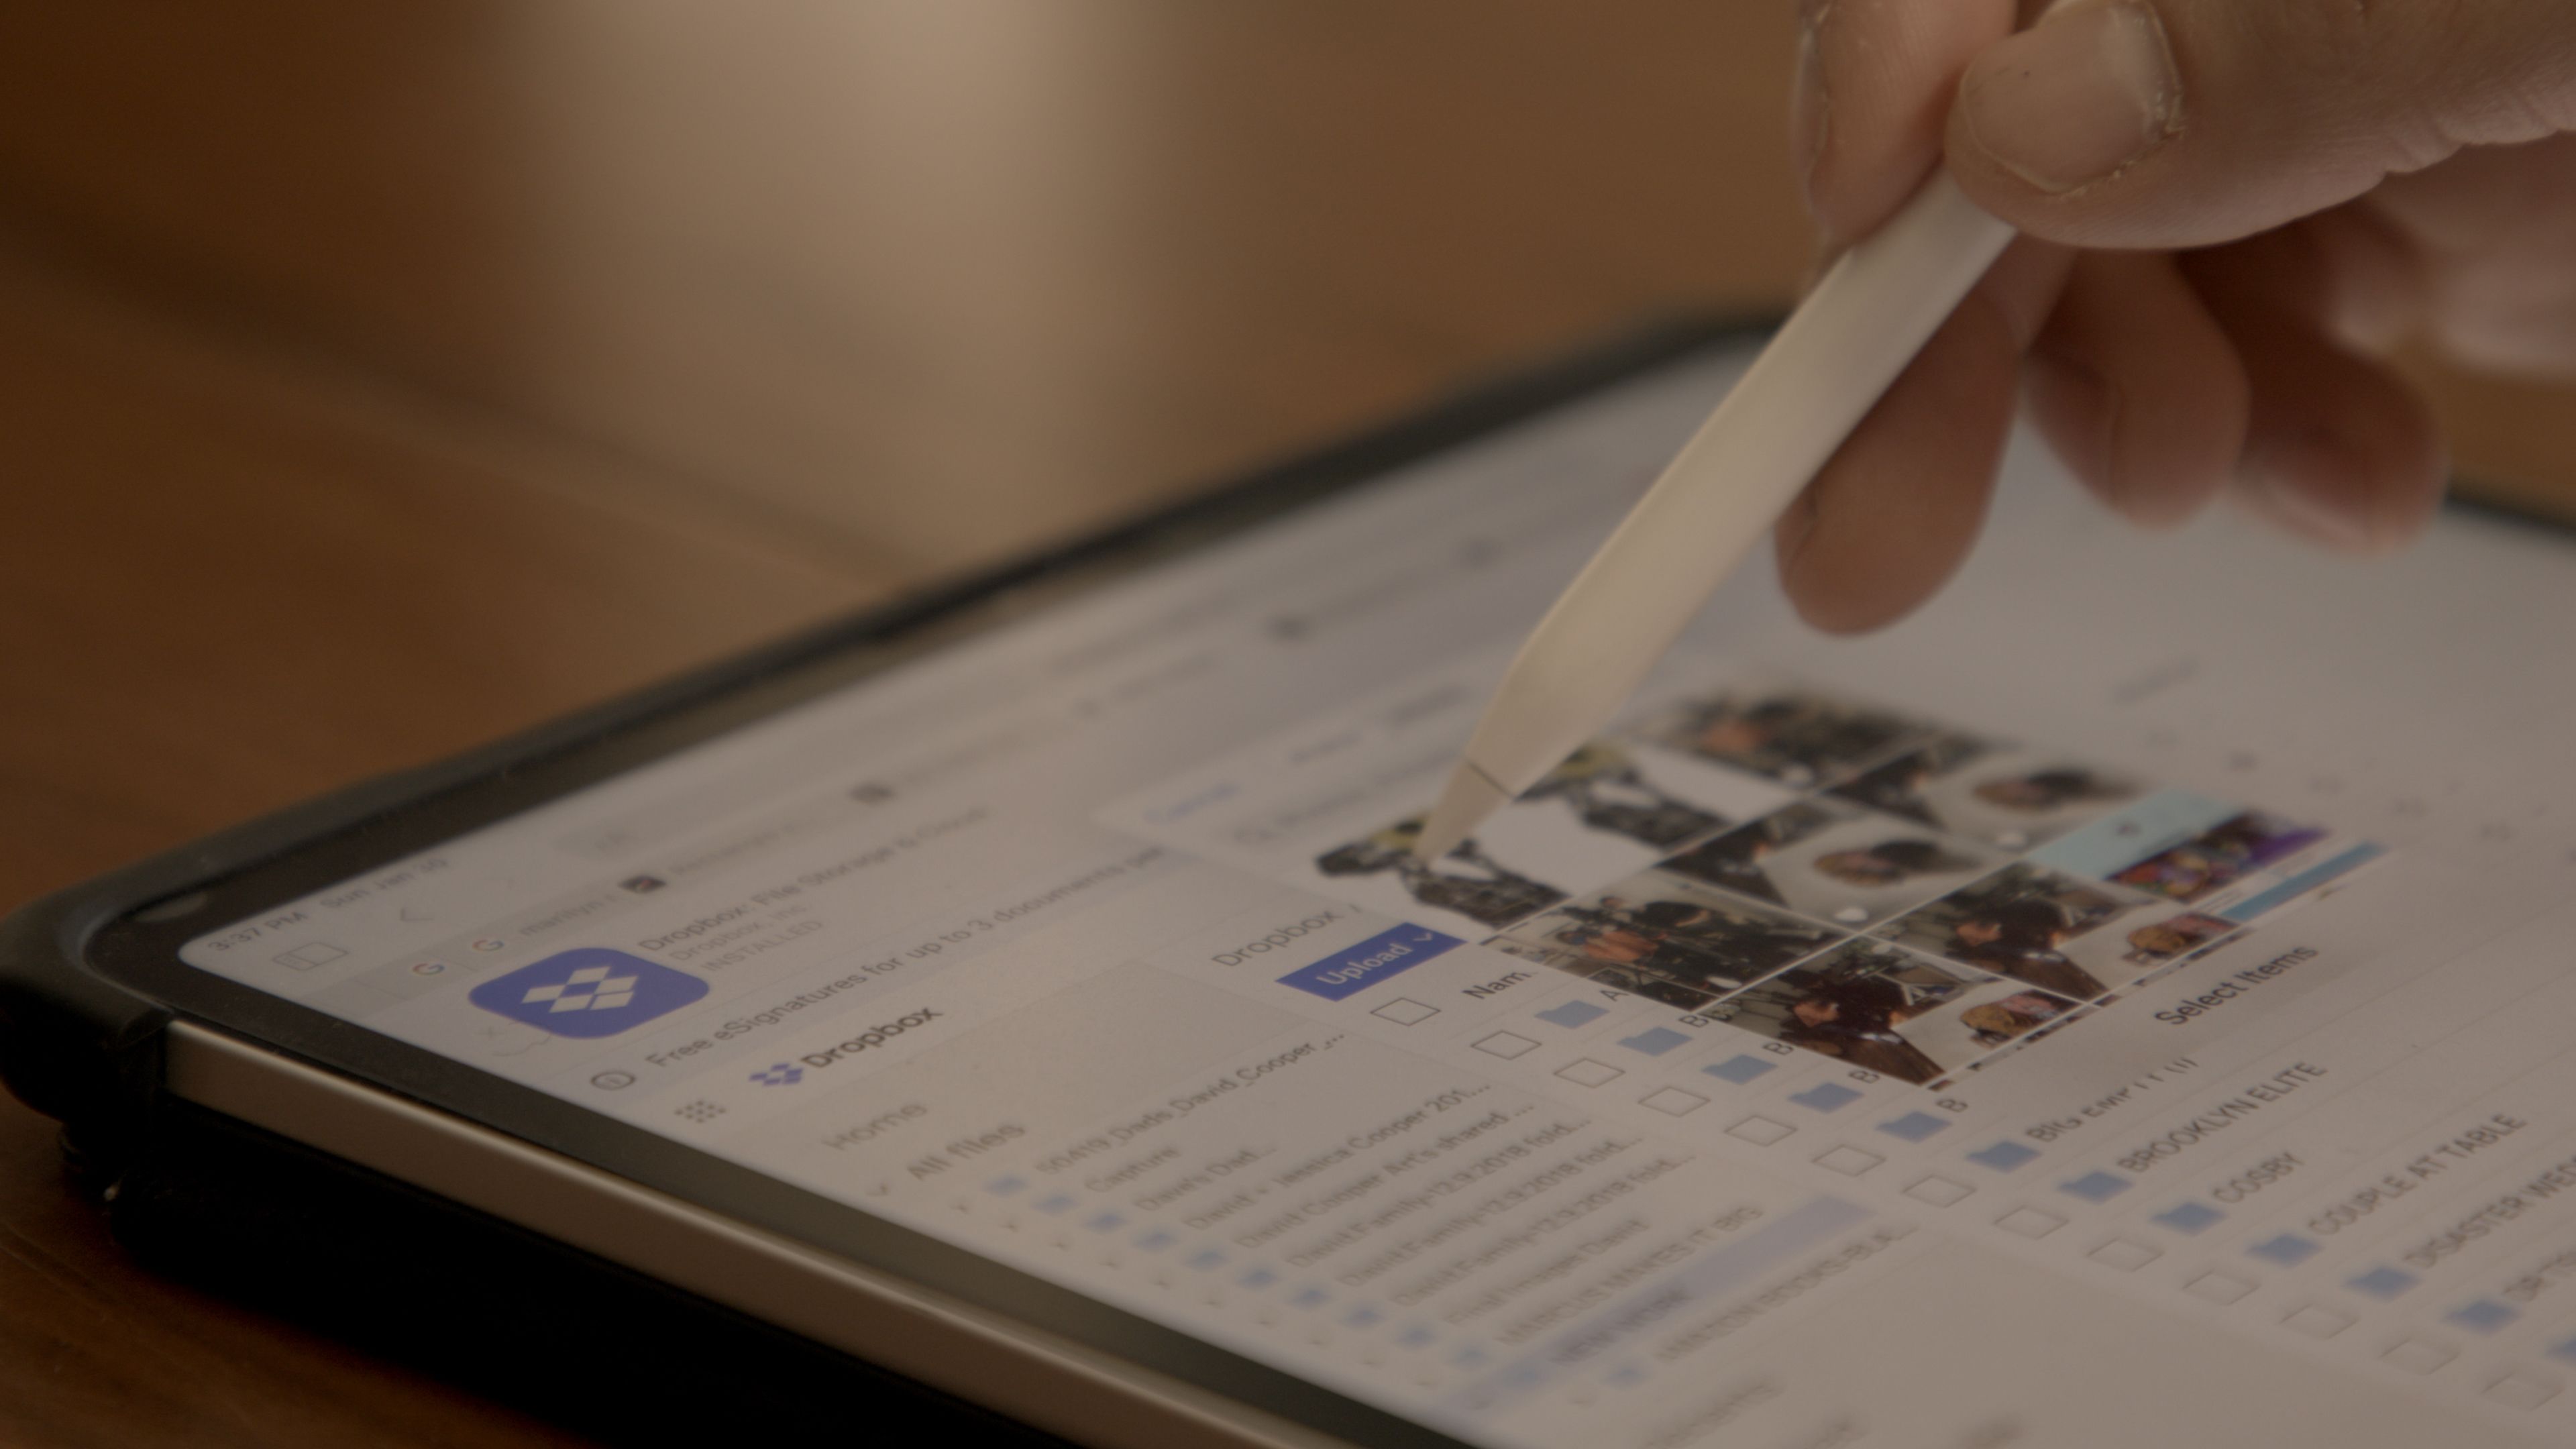 Markierung mit einem digitalen Stift auf einem Tablet innerhalb der Dropbox-Plattform